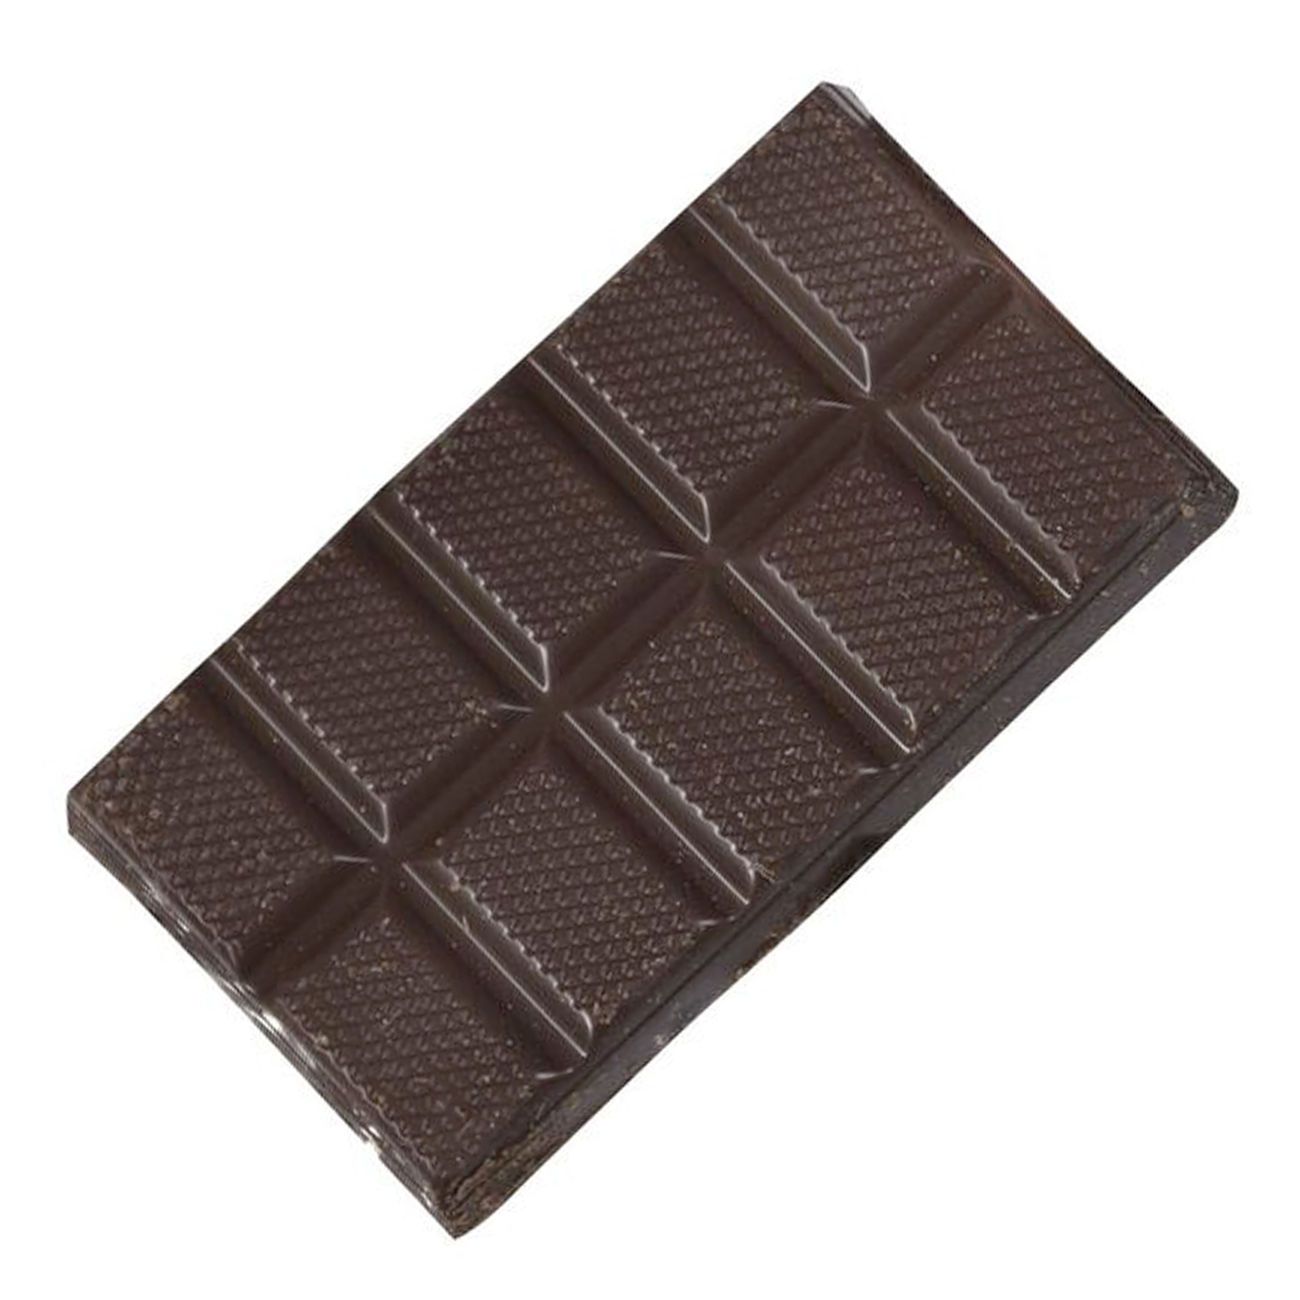 Original BW Schokolade 50g Bild 1